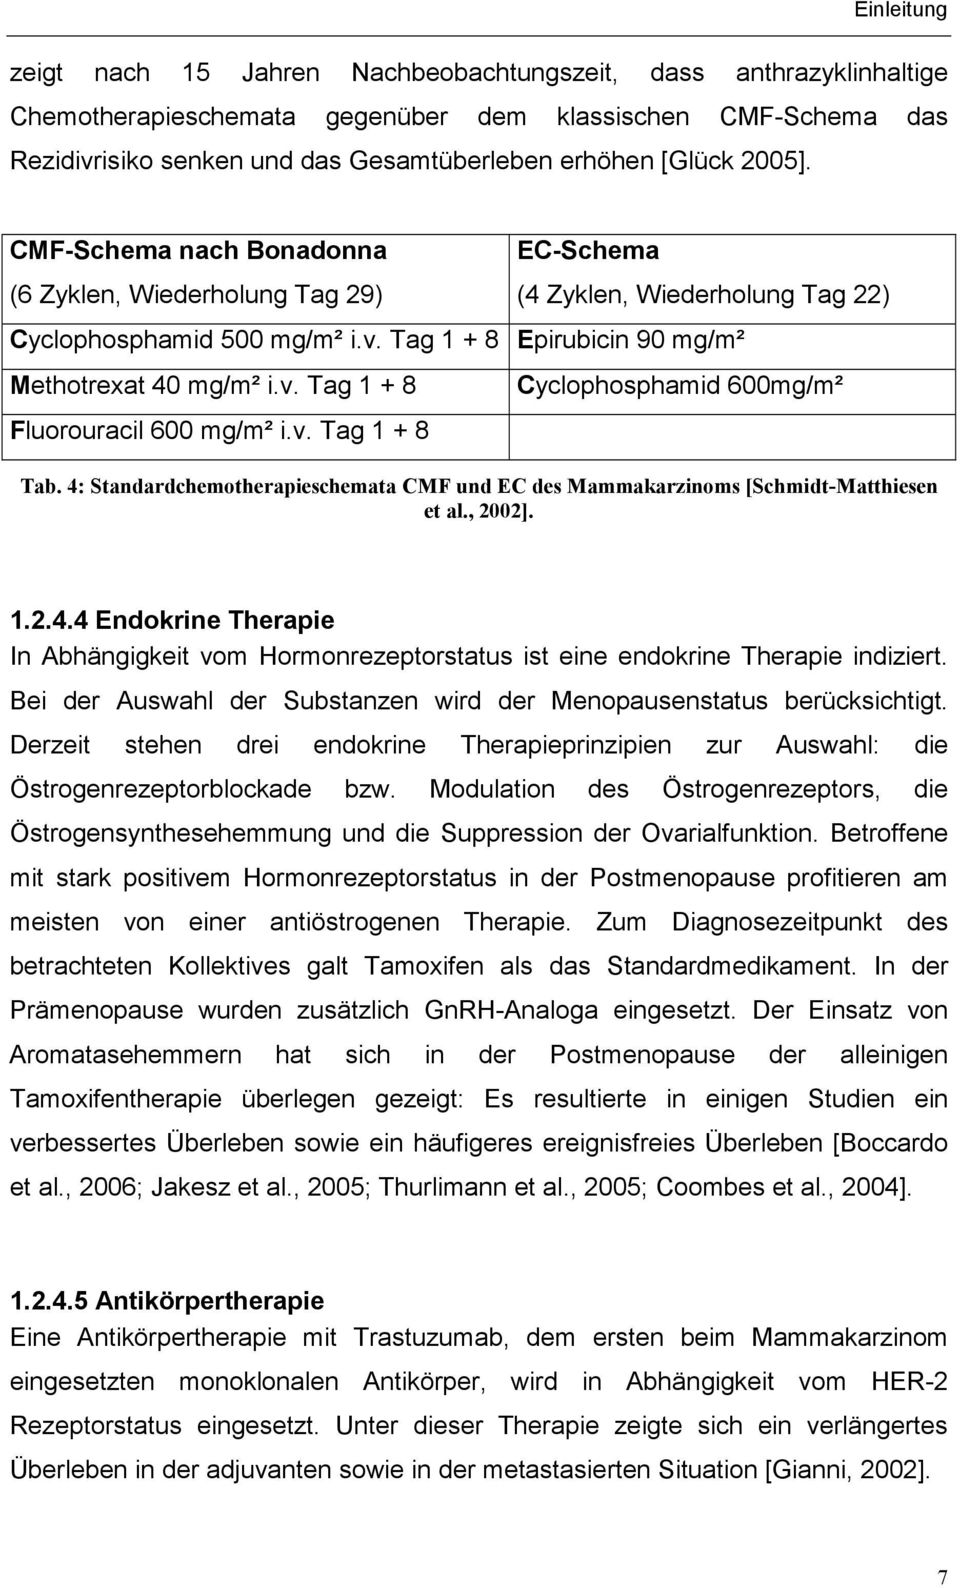 v. Tag 1 + 8 Cyclophosphamid 600mg/m² Tab. 4: Standardchemotherapieschemata CMF und EC des Mammakarzinoms [Schmidt-Matthiesen et al., 2002]. 1.2.4.4 Endokrine Therapie In Abhängigkeit vom Hormonrezeptorstatus ist eine endokrine Therapie indiziert.